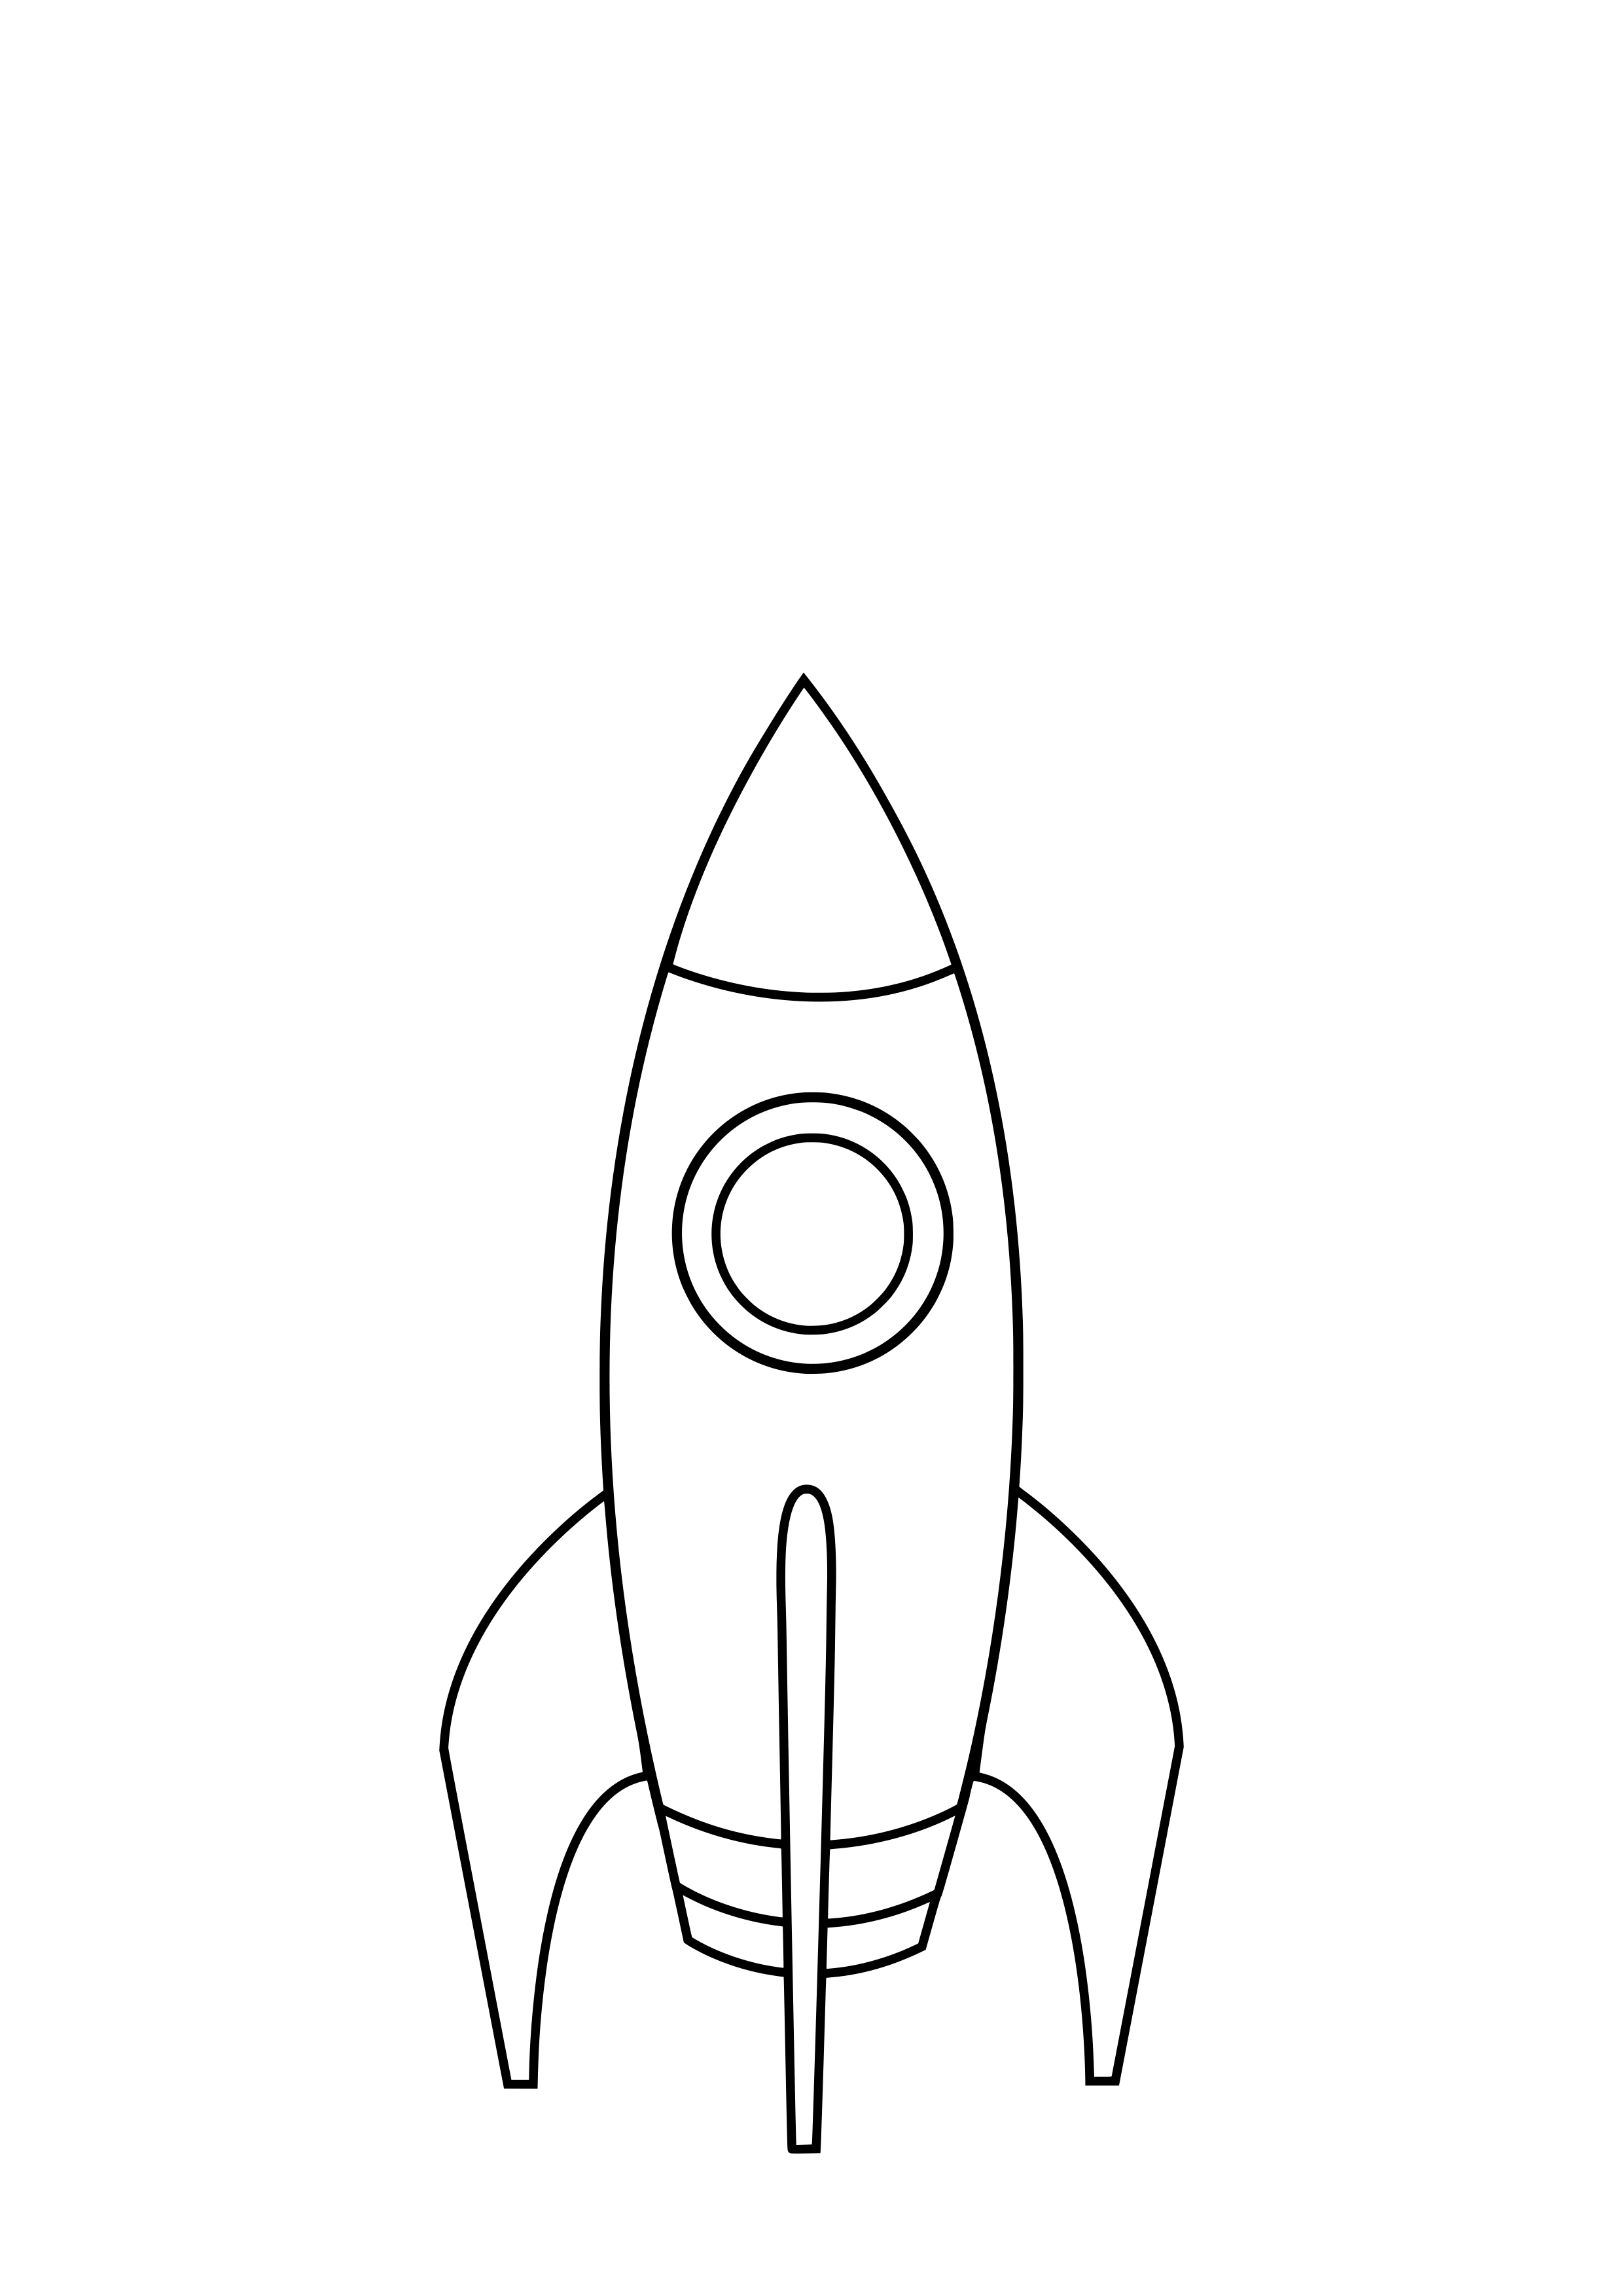 Покажи как нарисовать ракету. Ракета раскраска. Рисование ракета. Ракета рисунок контур. Ракета трафарет.